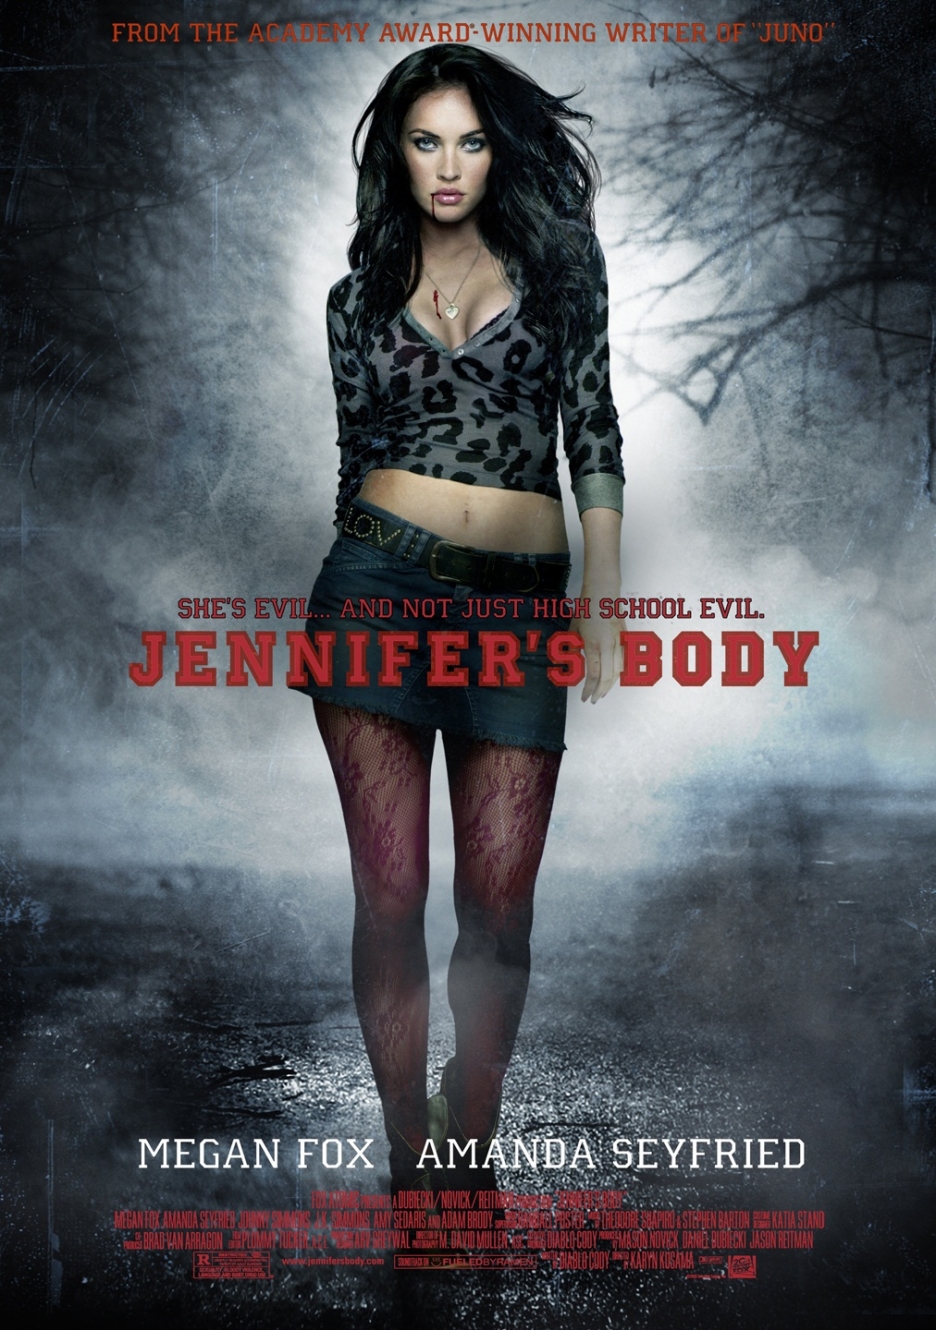 936full-jennifer's-body-poster.jpg